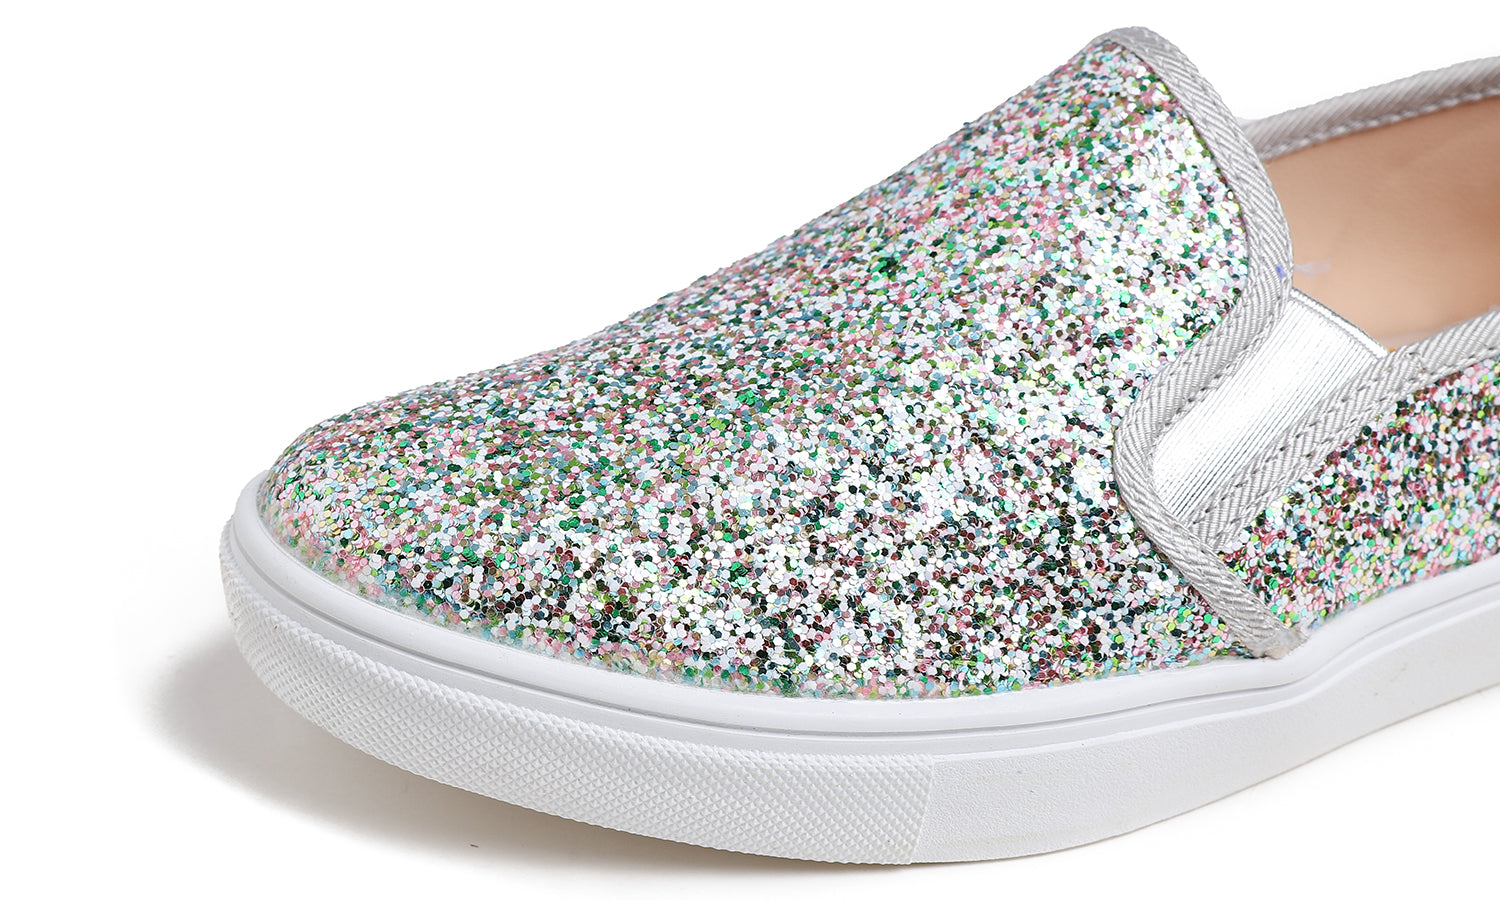 Feversole Women's Glitter Multi Silver Slip On Sneaker Casual Flat Loafers